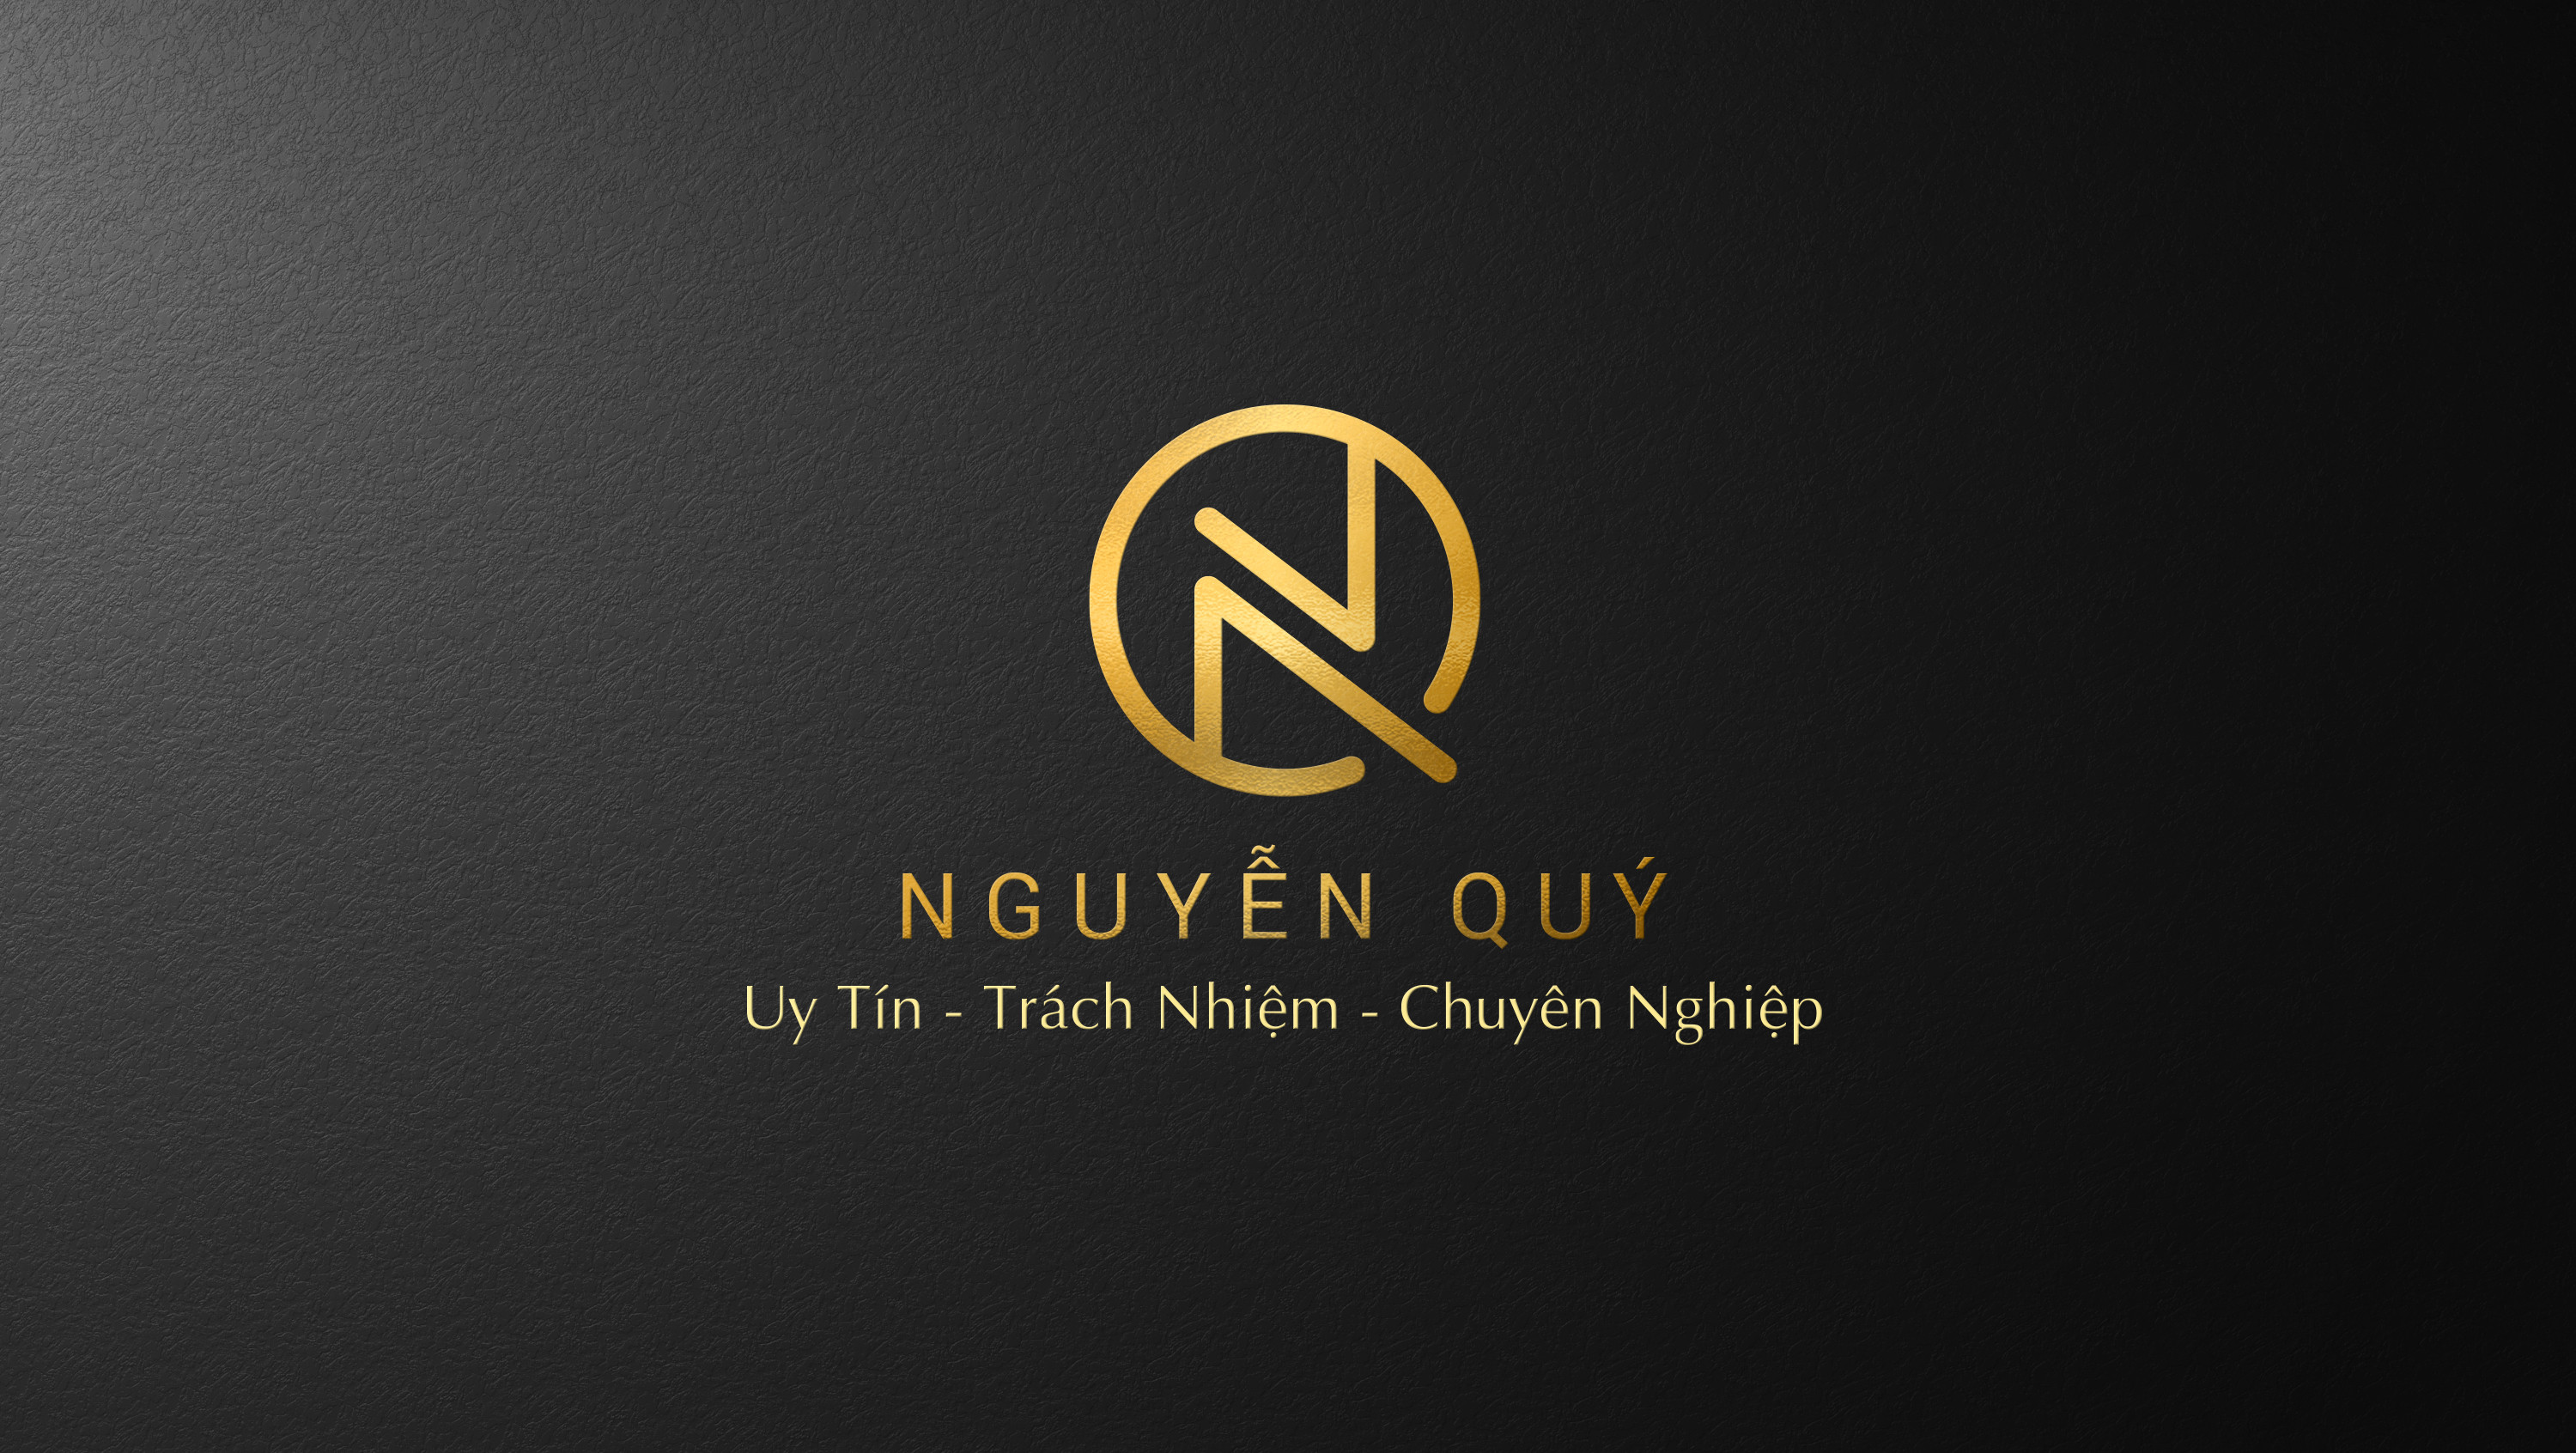 Nguyen Quy